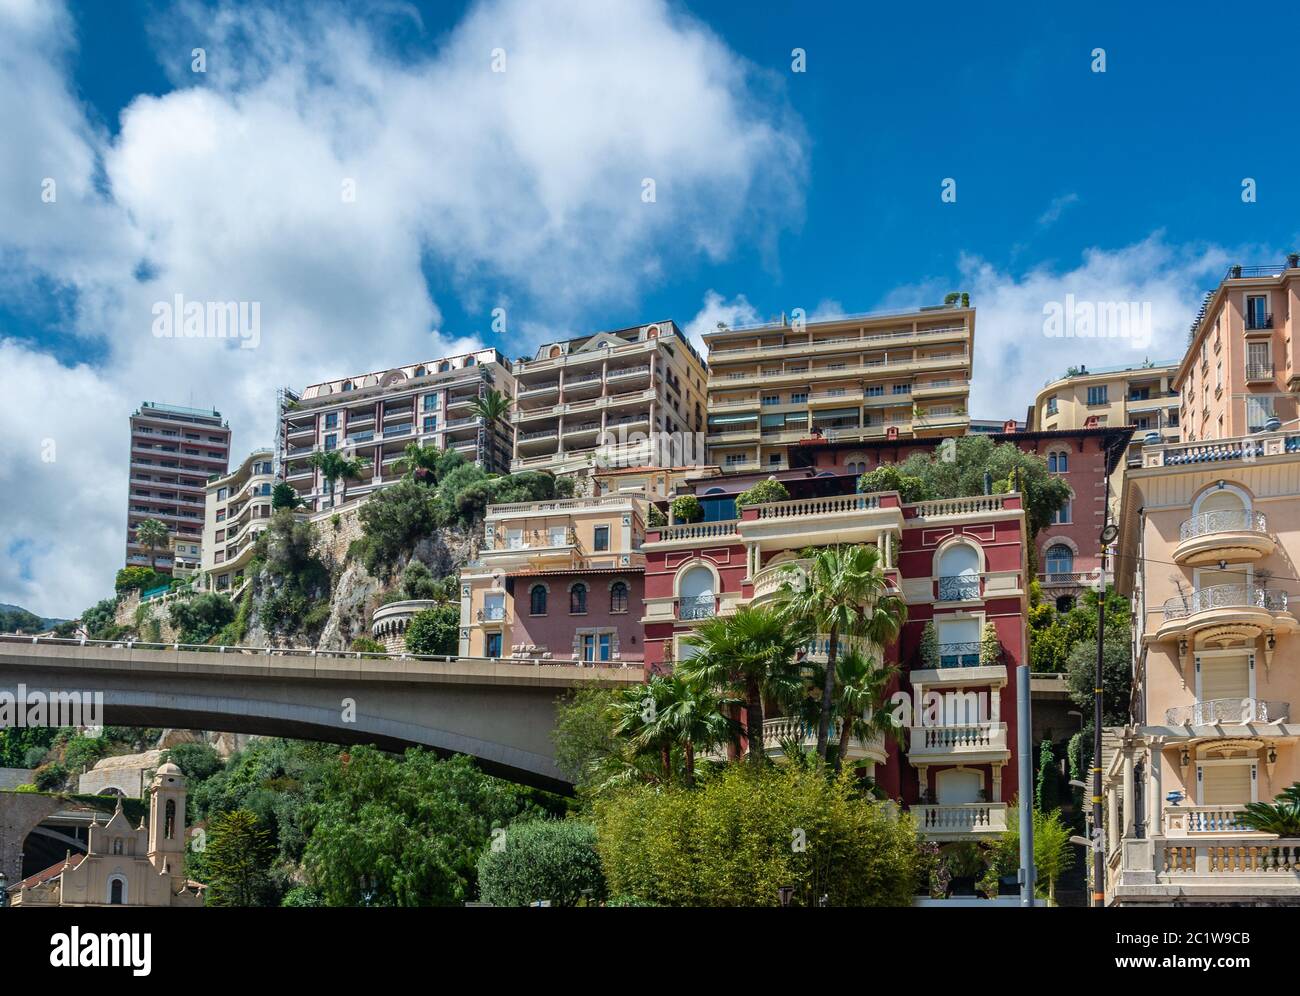 Monte Carlo è una città del Principato di Monaco, situata su una spicco scarpata ai piedi delle Alpi Marittime lungo la Riviera francese. Foto Stock